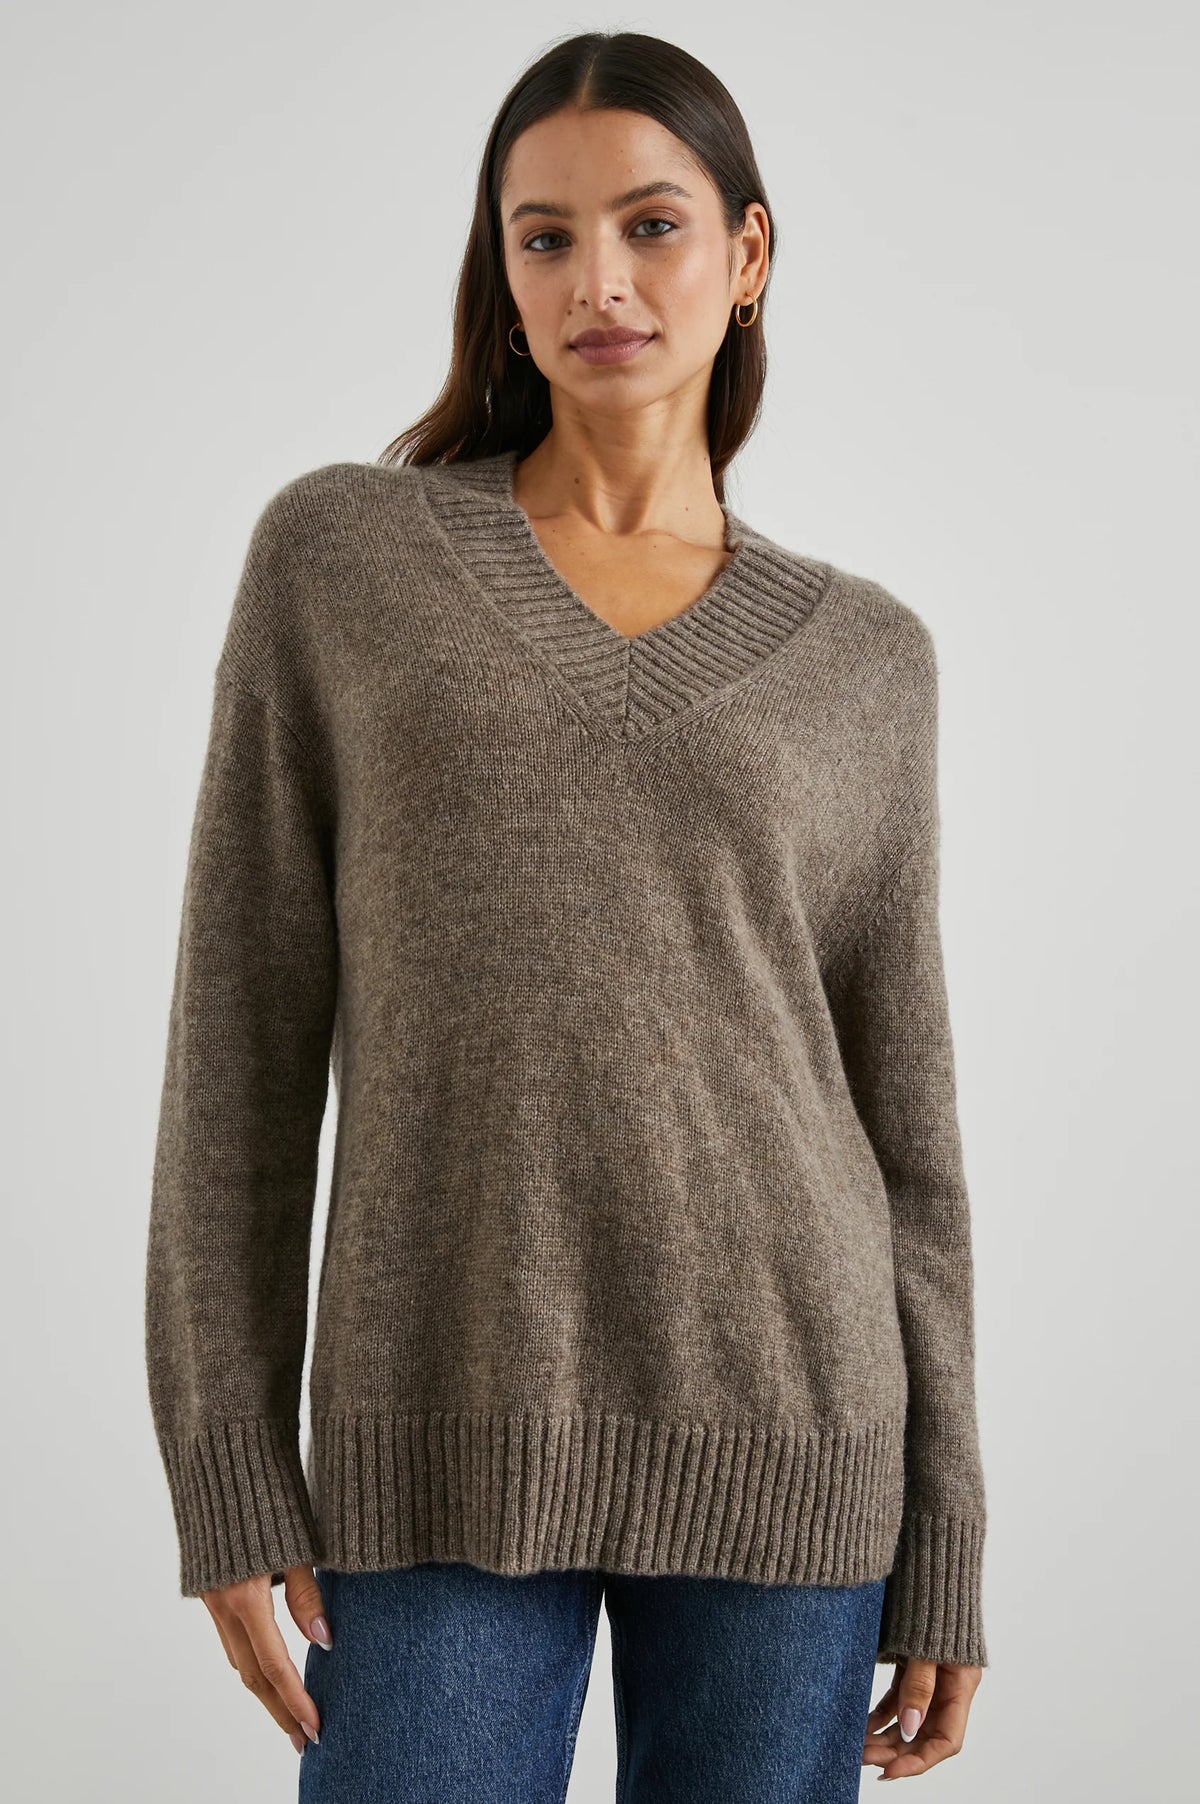 Gisella Sweater - Hazelnut